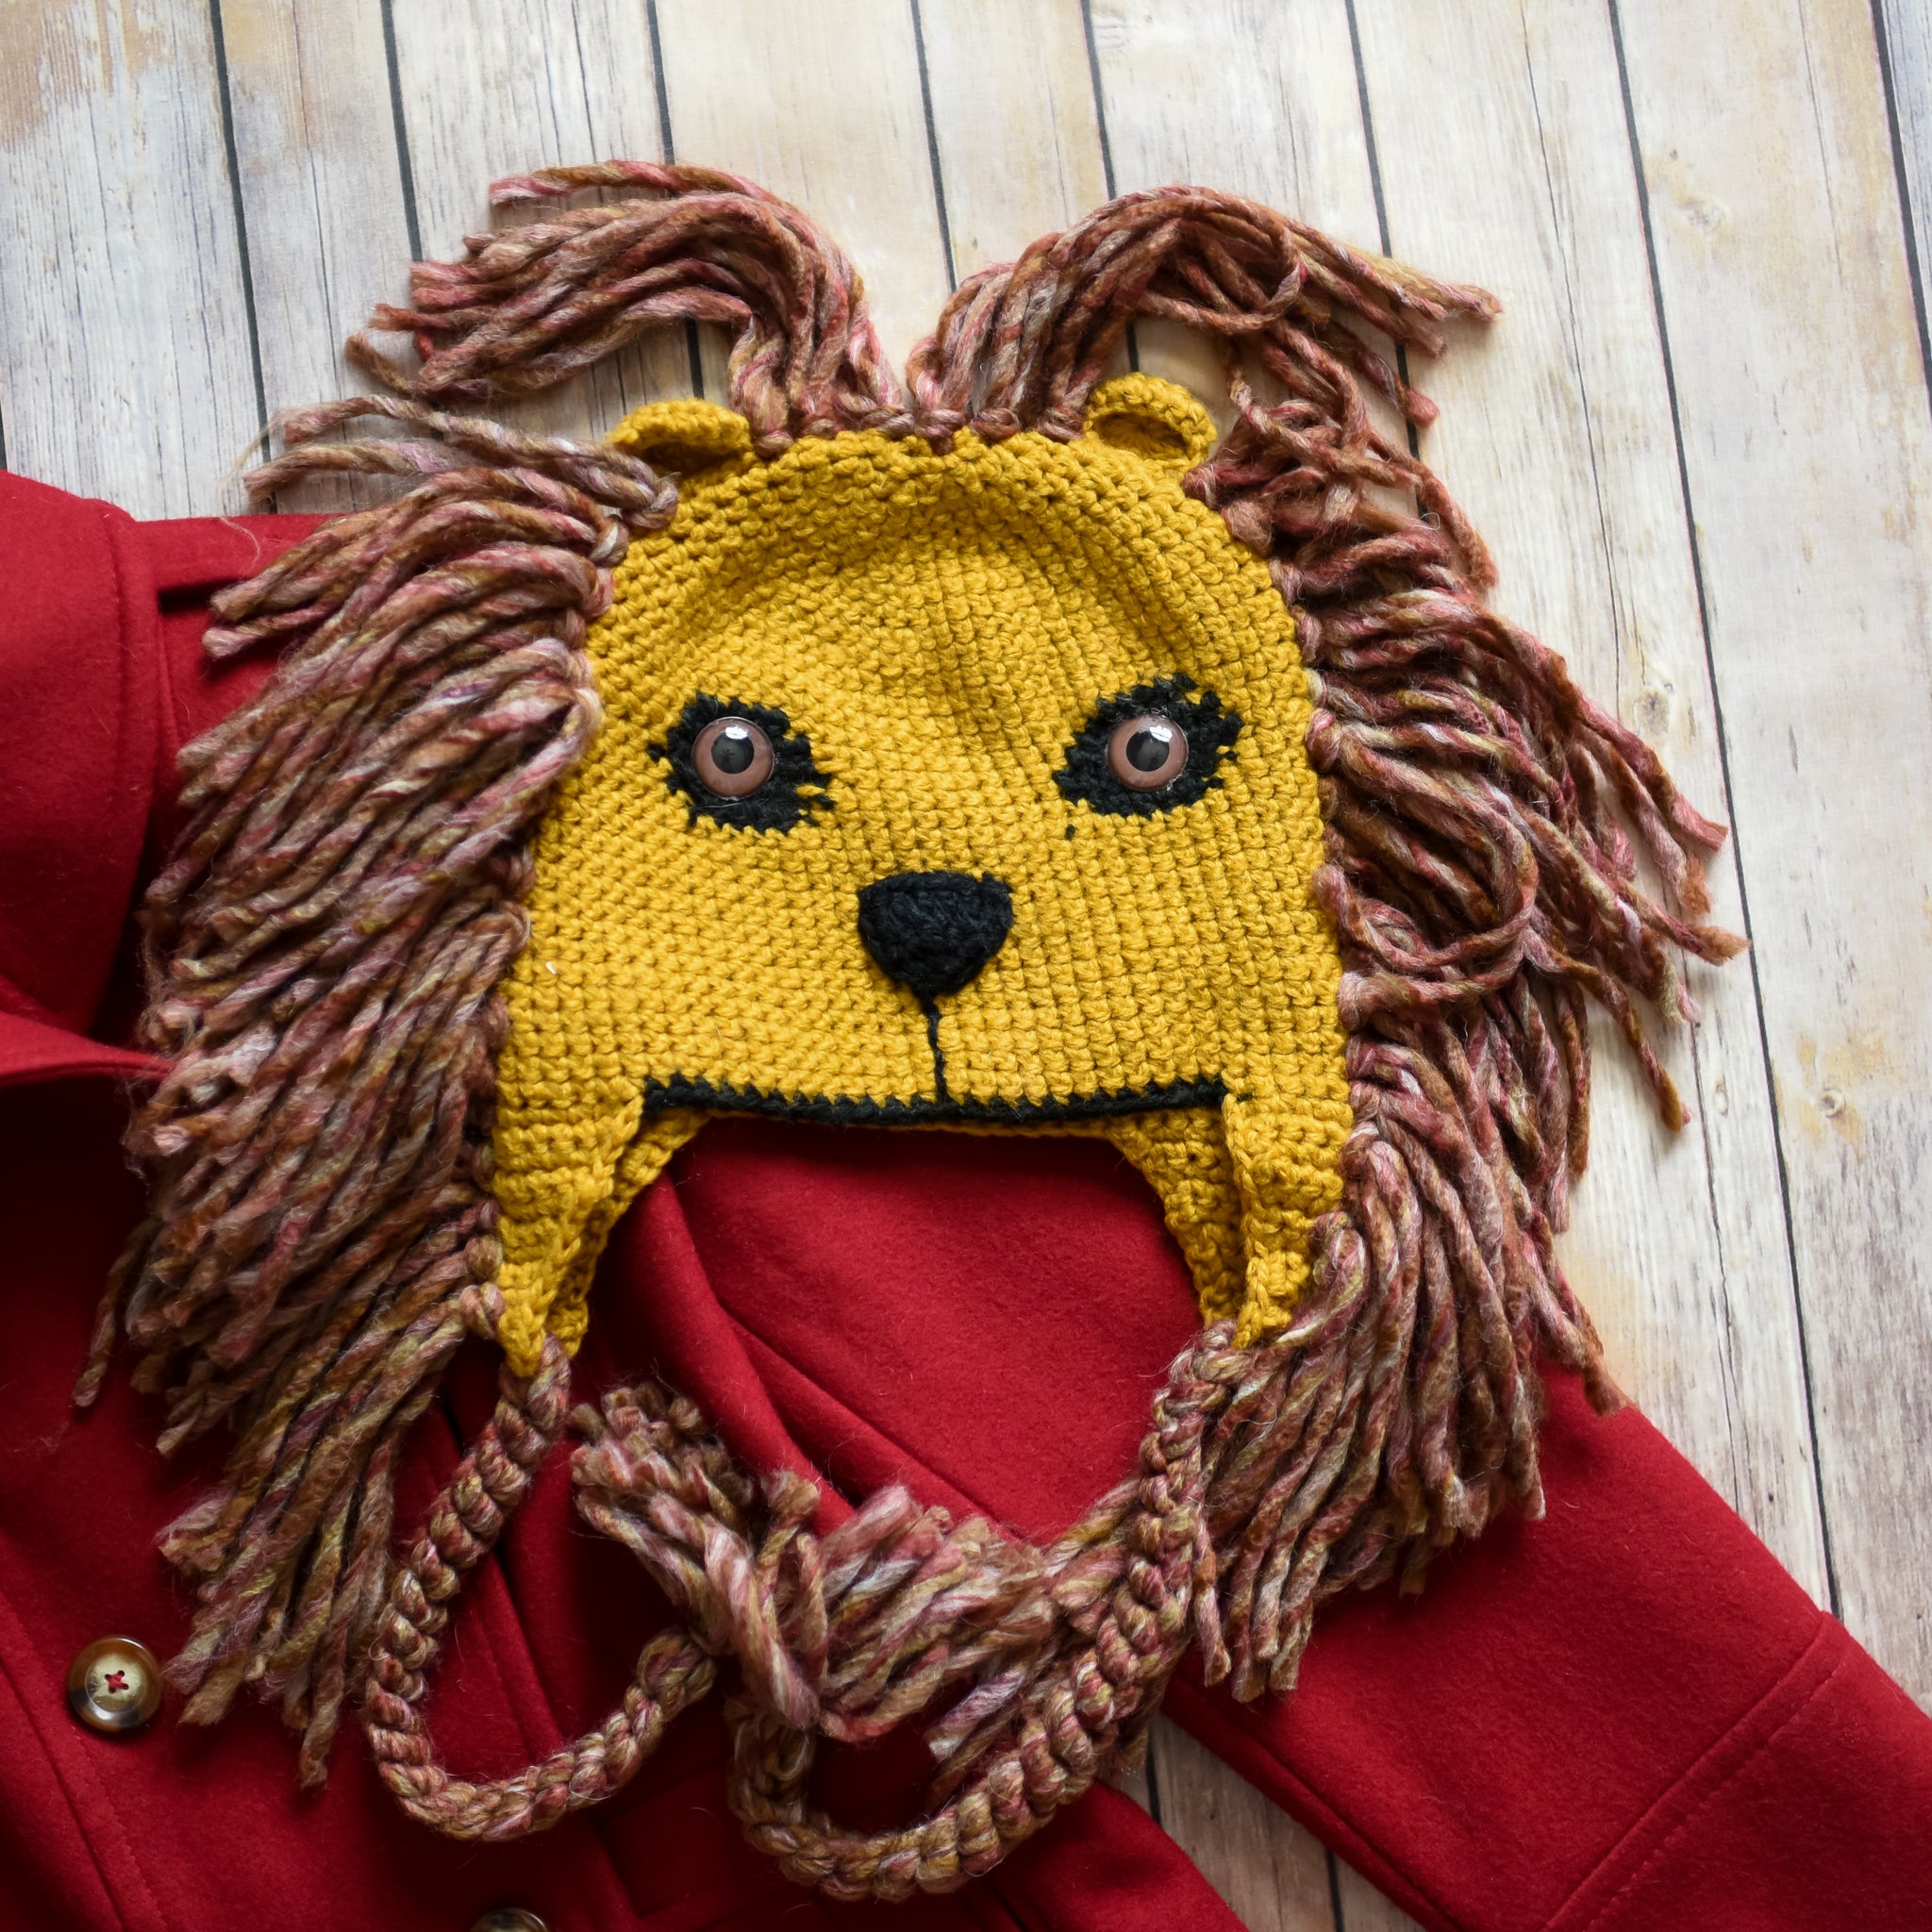 Mũ sư tử len: Trông ngộ nghĩnh và đáng yêu, mũ sư tử len là lựa chọn hoàn hảo cho những ai yêu thích trang phục độc đáo và sáng tạo. Chú sư tử đang ngủ say trên đầu bạn sẽ khiến bạn trở nên nổi bật và thu hút sự chú ý từ mọi người.